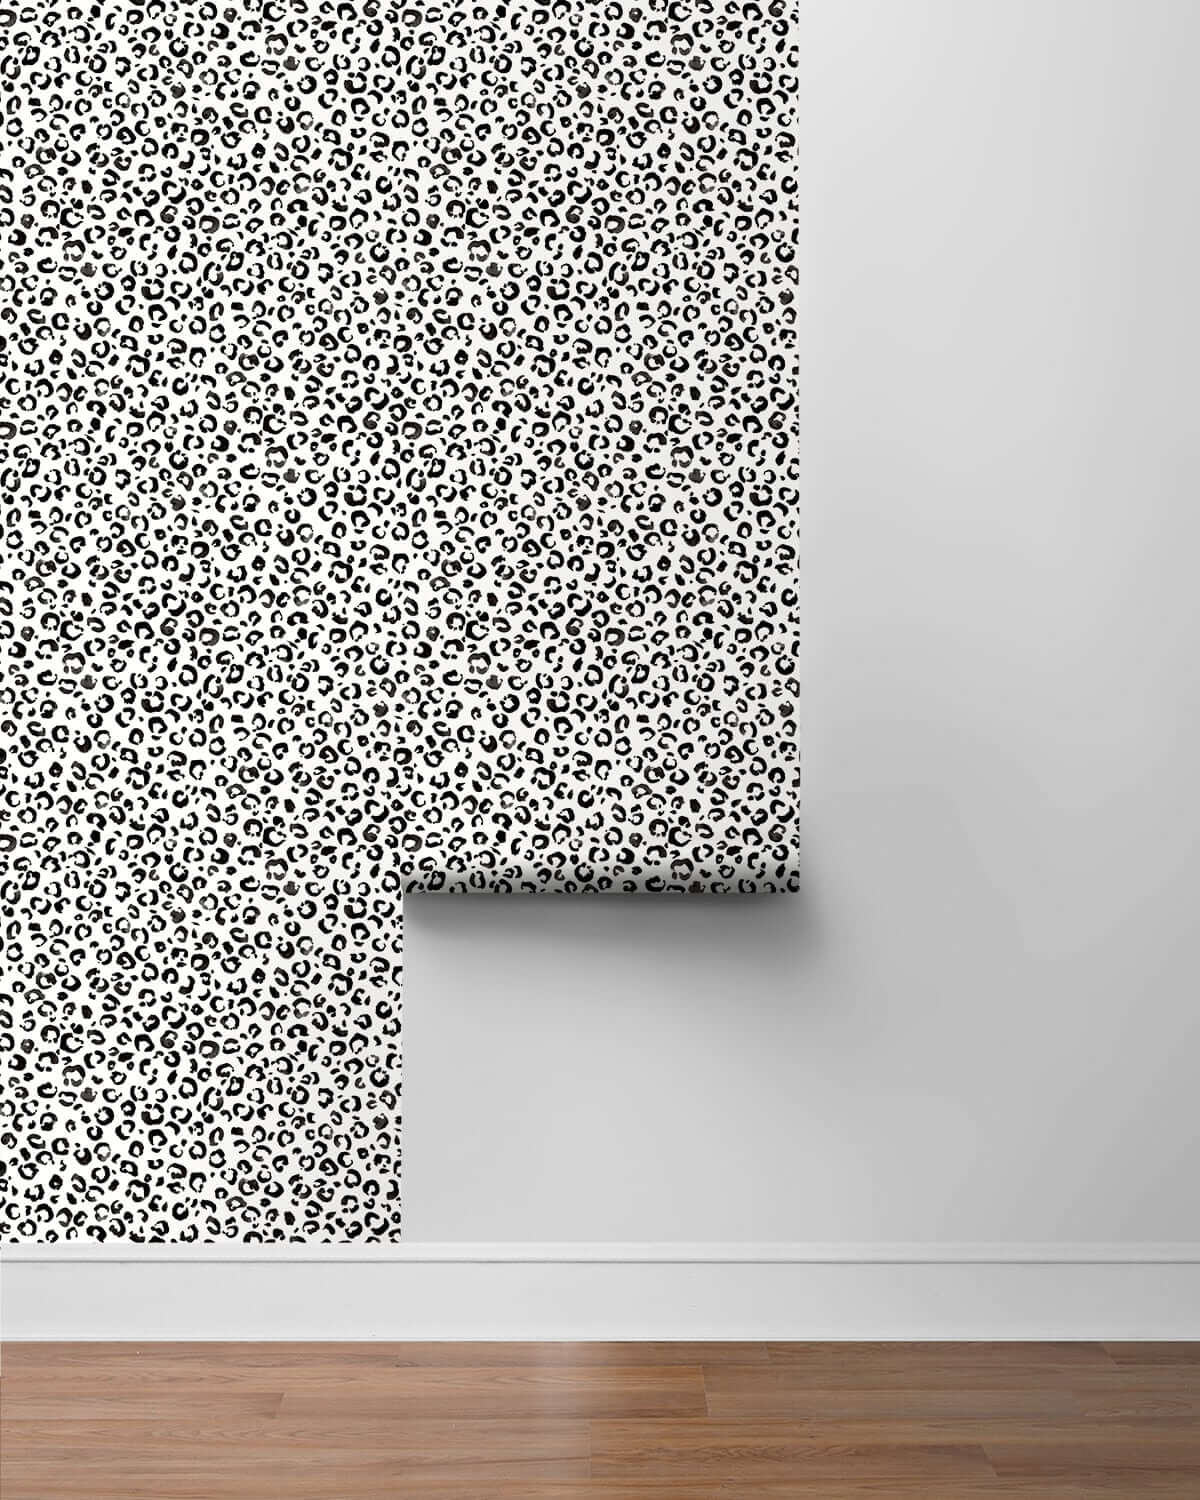 Daisy Bennett Classic Leopard Peel & Stick Wallpaper - Black & White